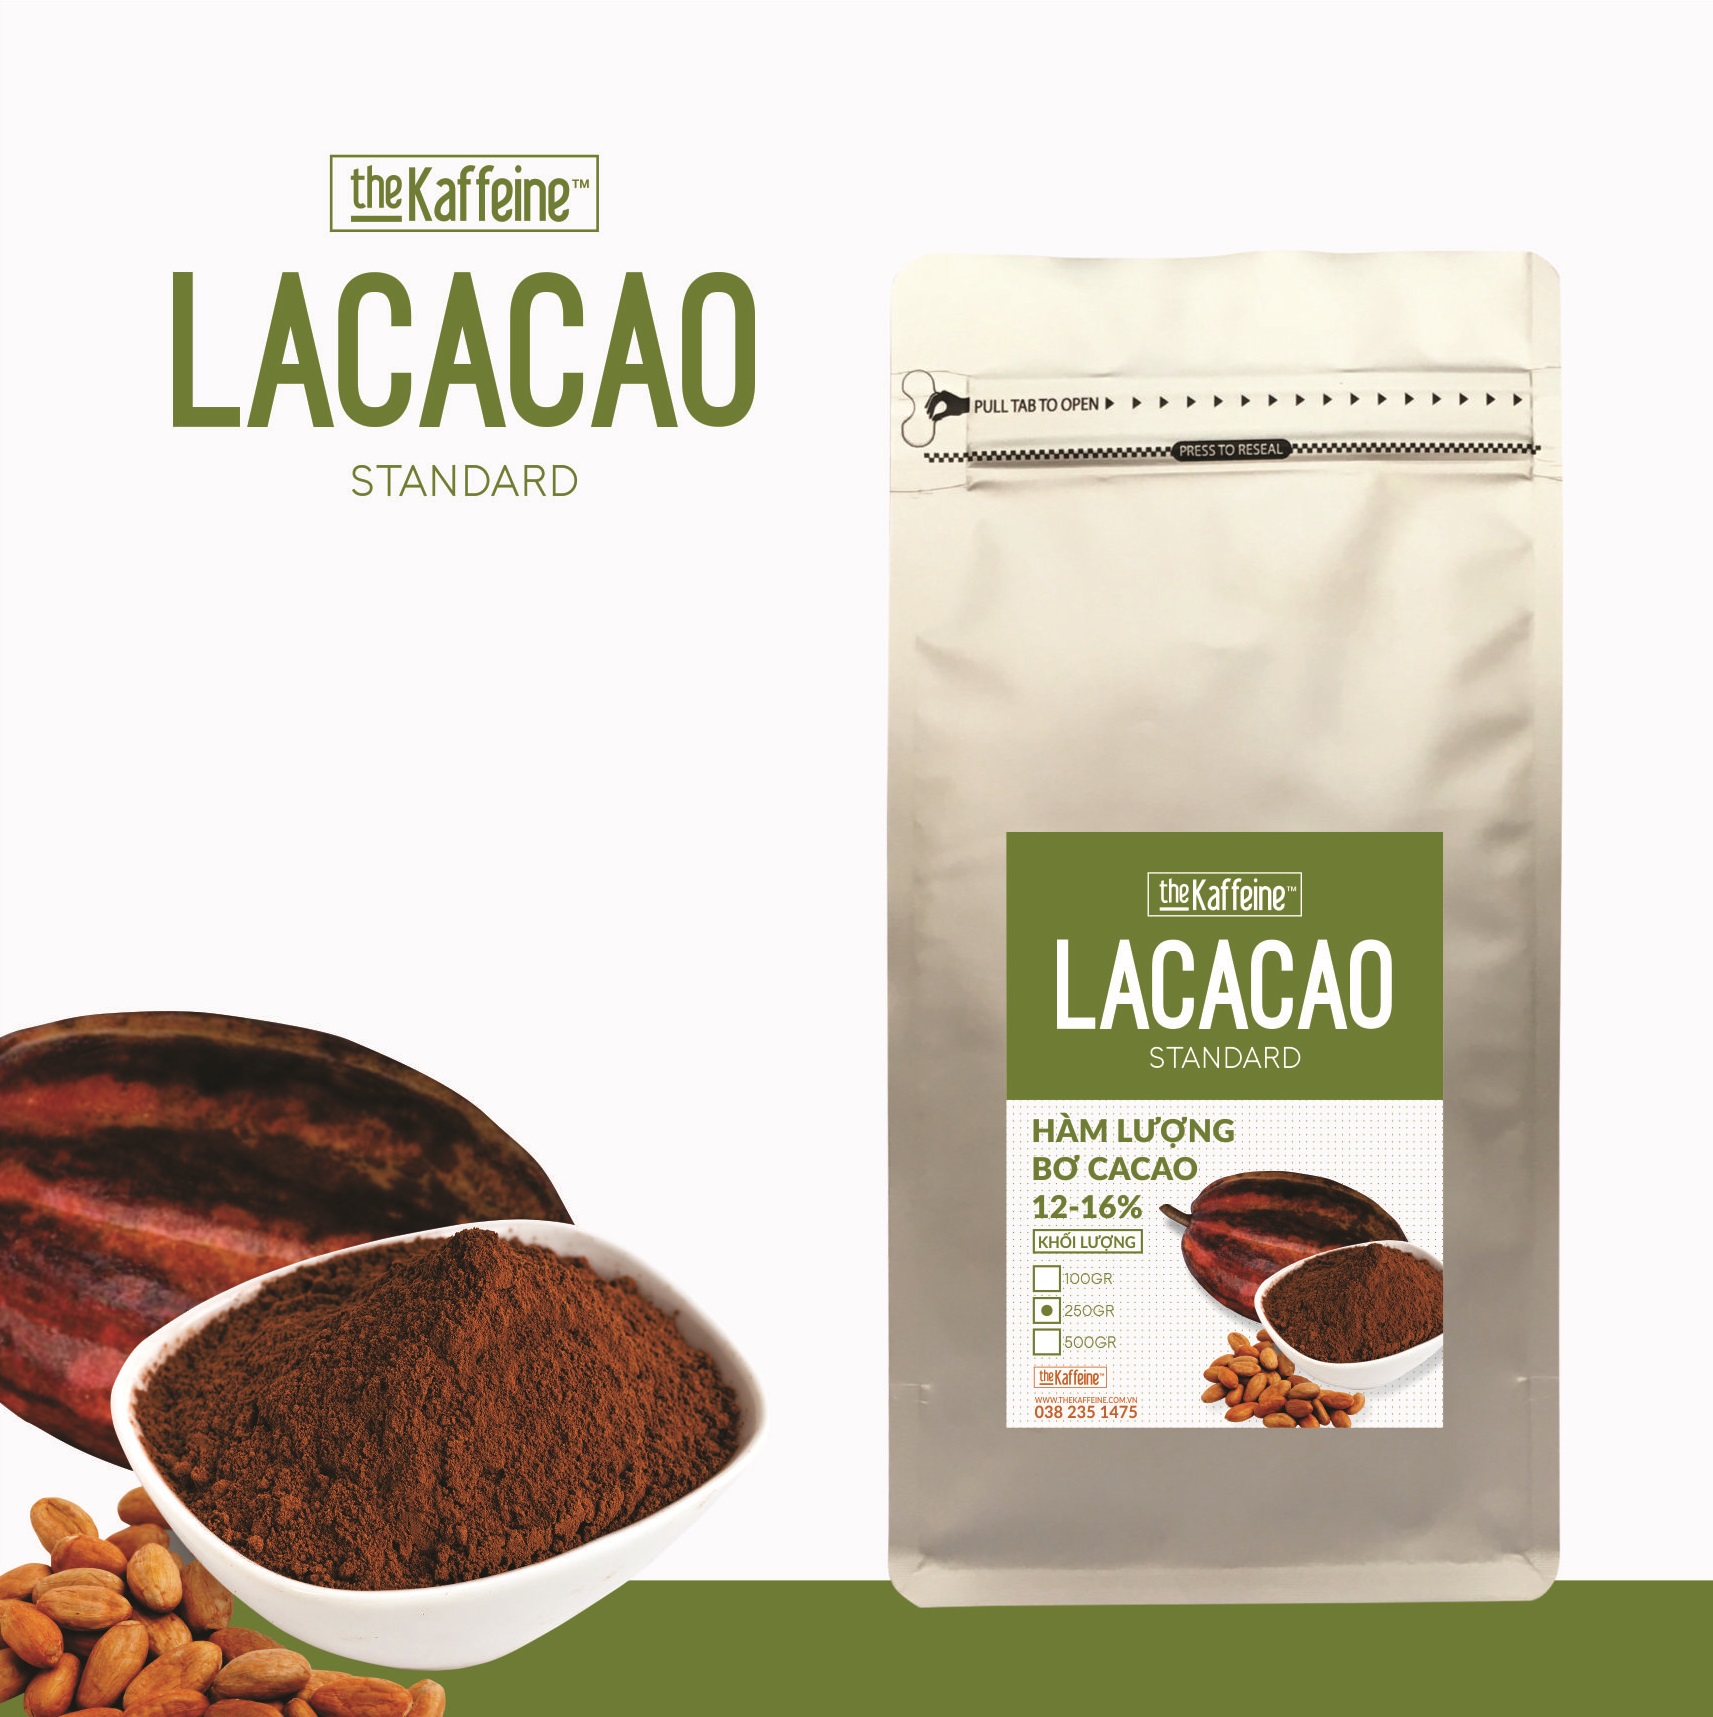 Bột cacao nguyên chất Lacacao Standard từ hạt ca cao đạt chất lượng UTZ